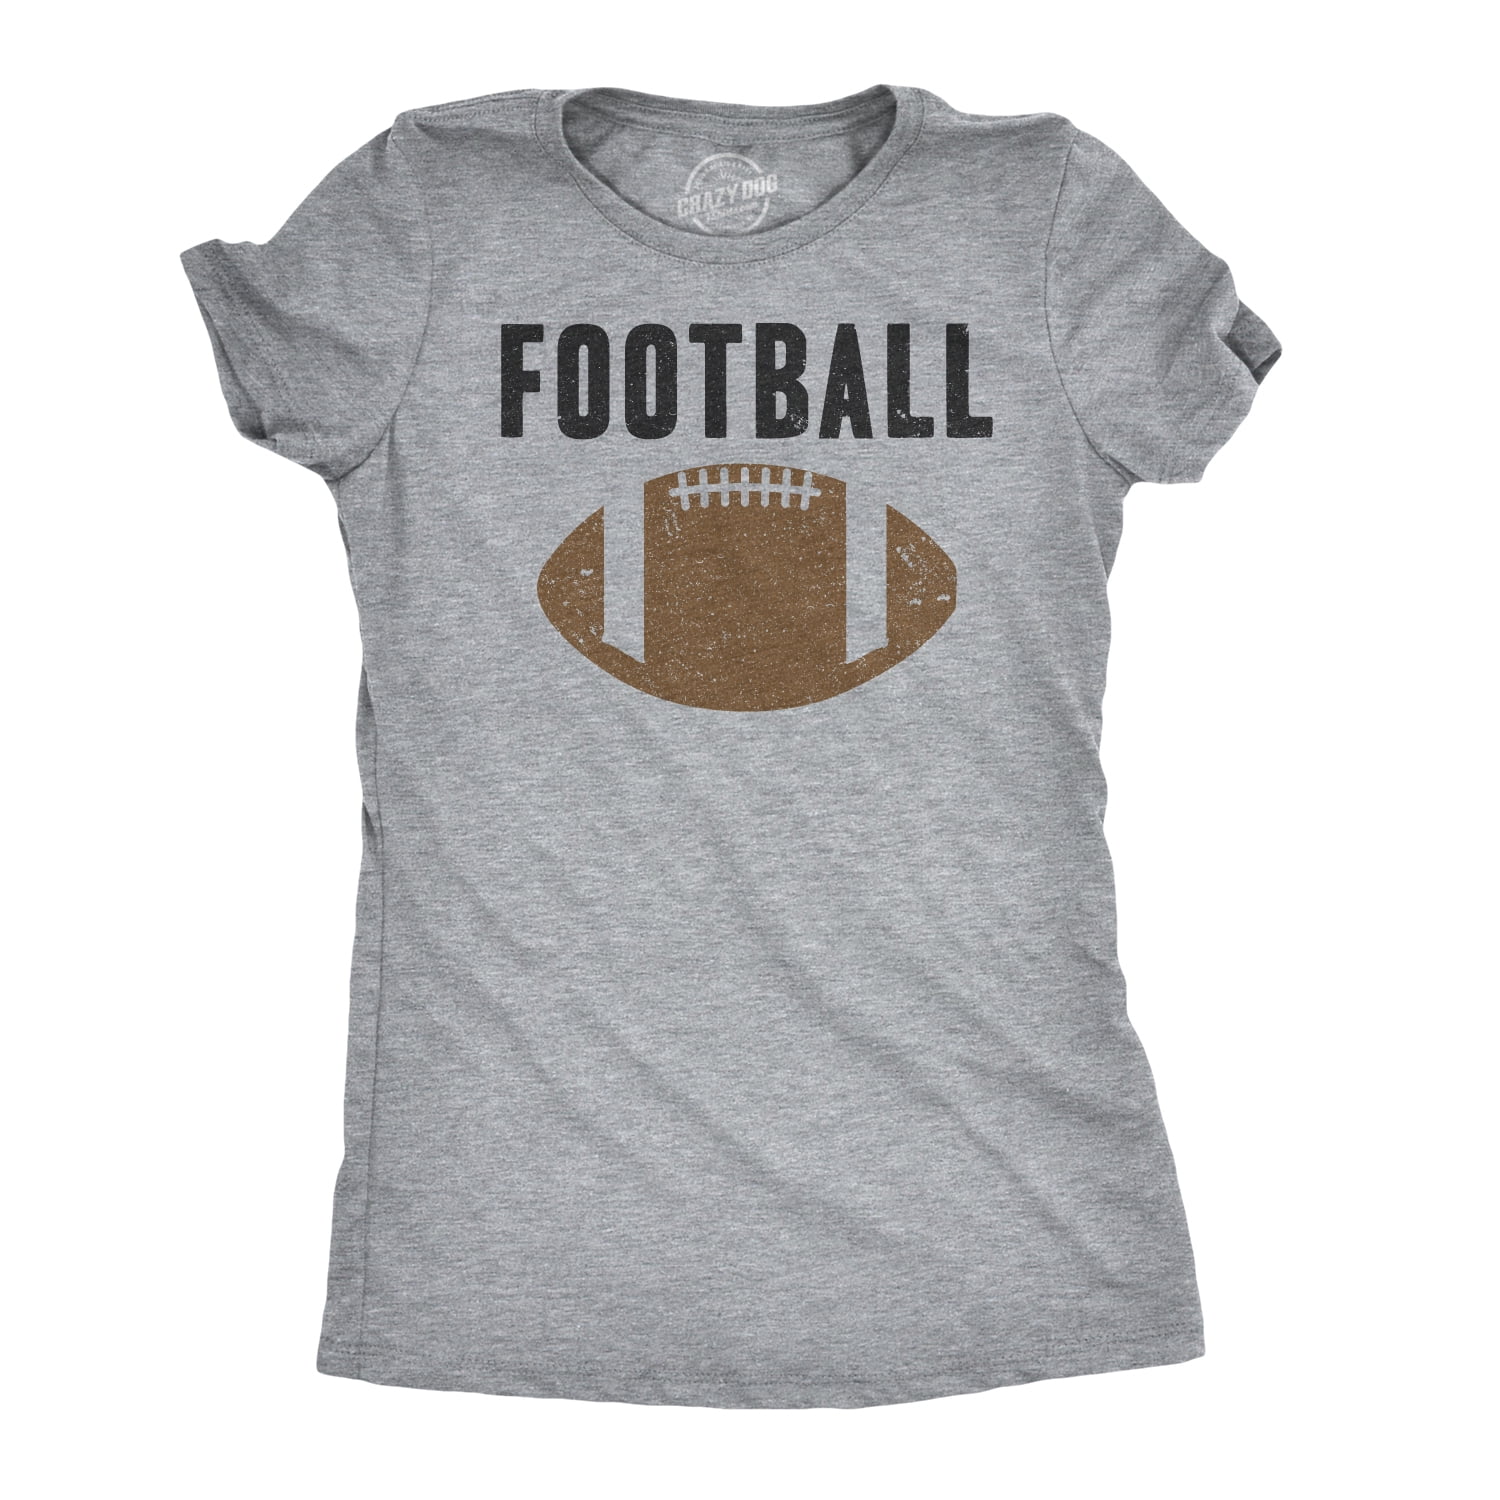 Women's Football Shirt Cute Football Shirts For Women Fall Football Shirt Game Day Football Shirt Game Day Vibes Shirt Cute Game Day Tee